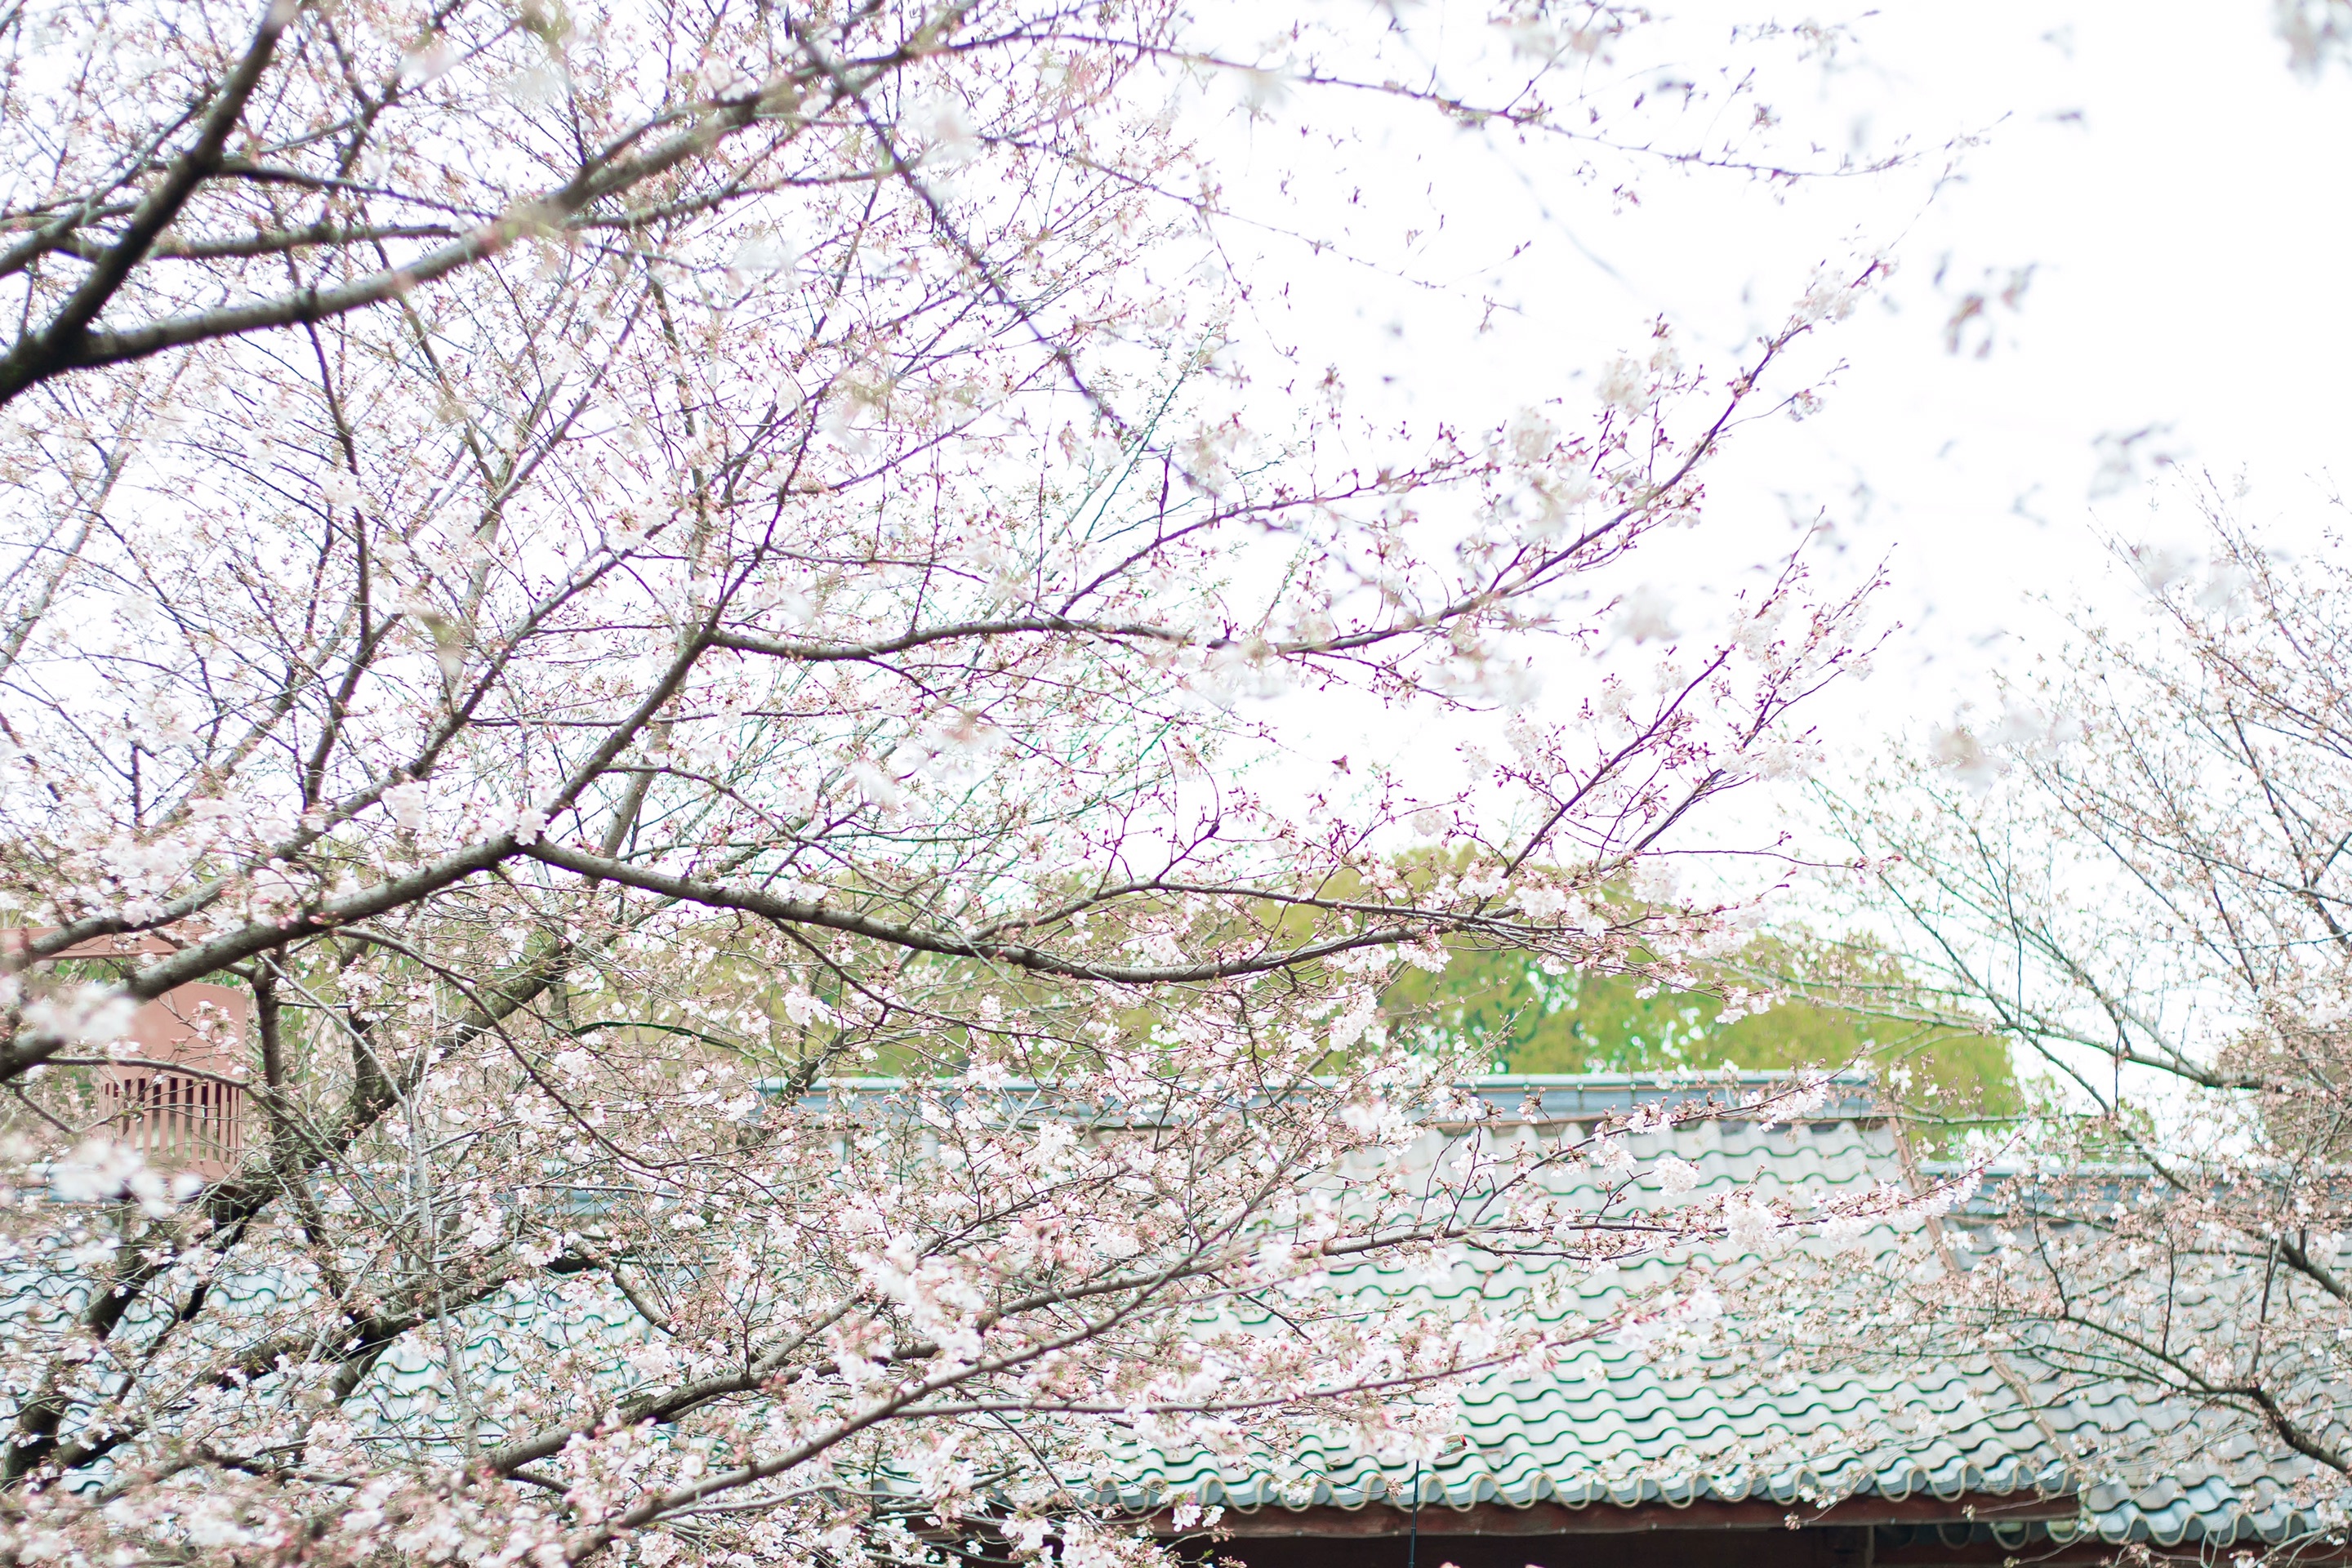 鼋头渚樱花节——2021太湖鼋头渚风景区-樱花谷带娃赏樱花的日子